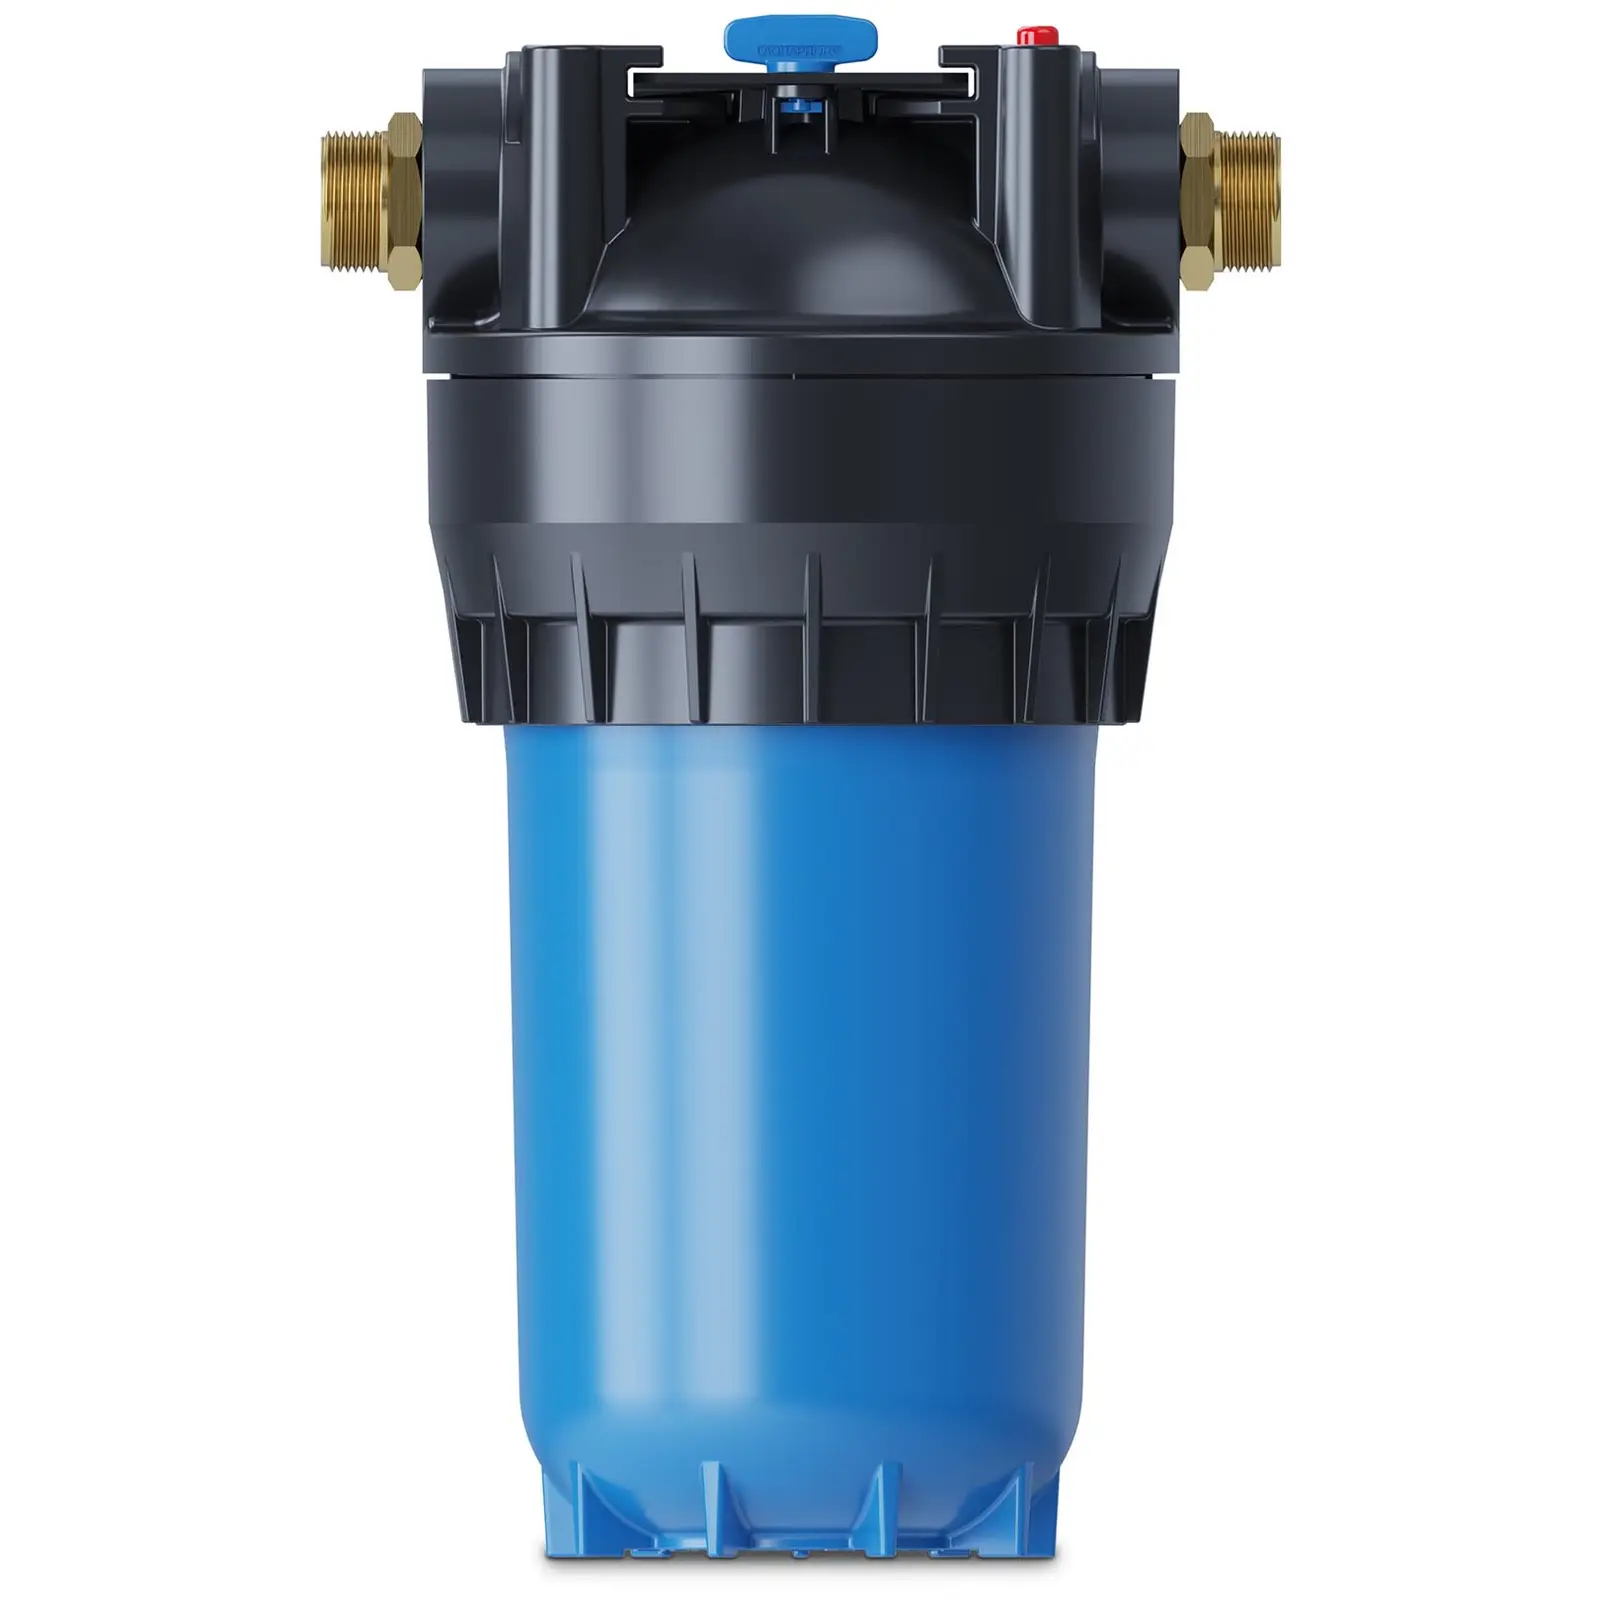 Pouzdro filtru Aquaphor pro filtrační vložku - 10”